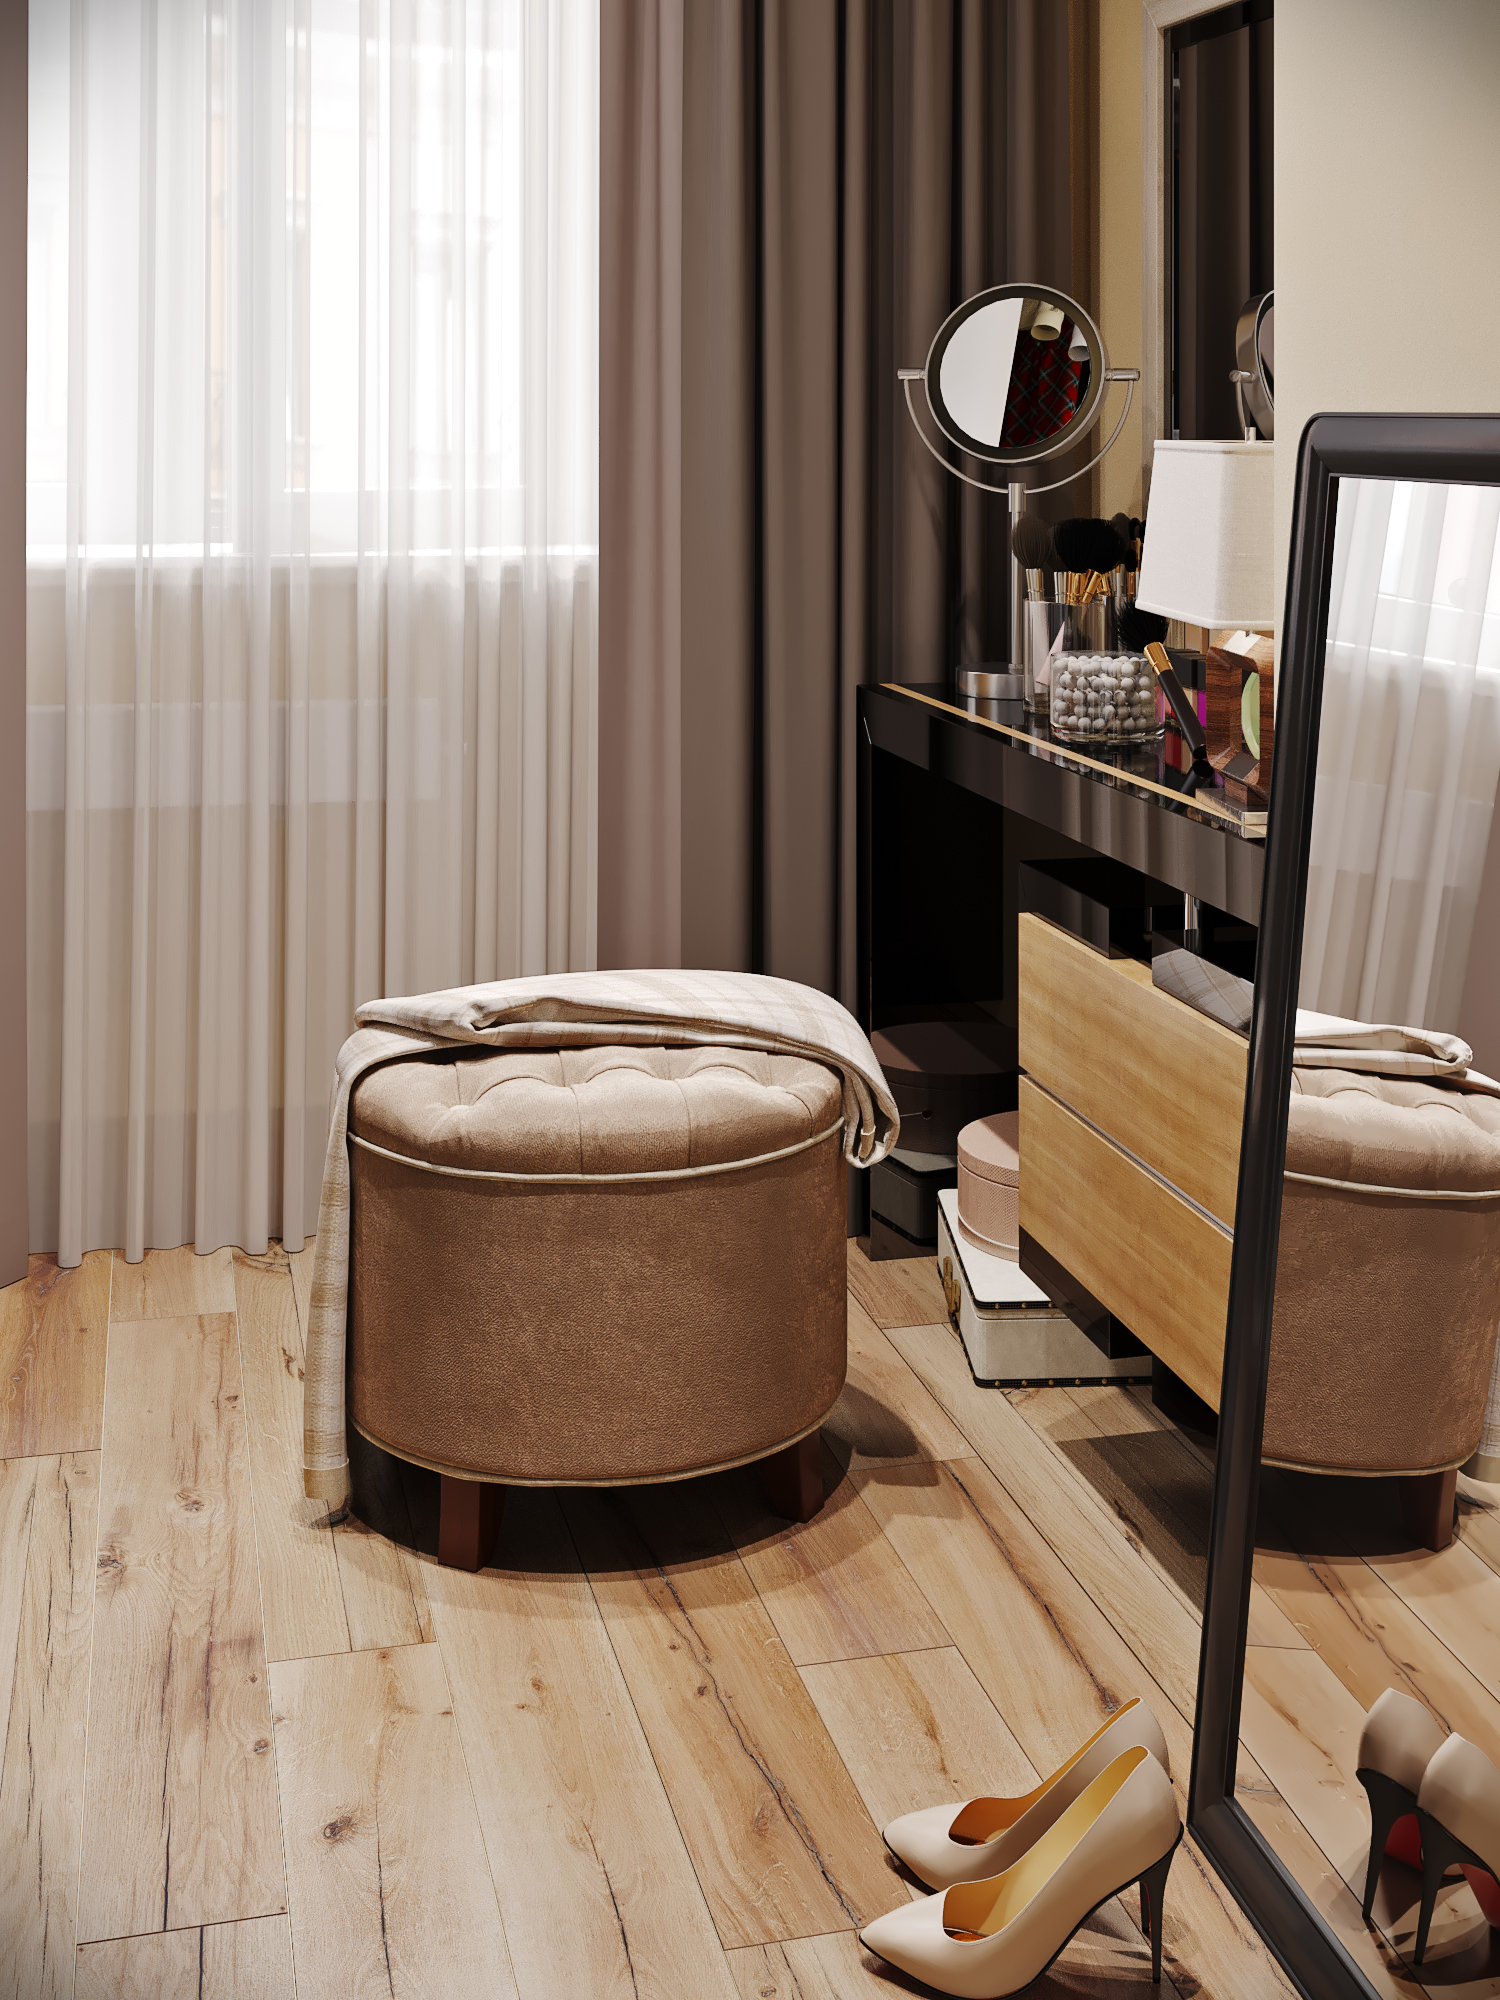 Townhouse. Soyunma odasının görselleştirilmesi in 3d max corona render resim